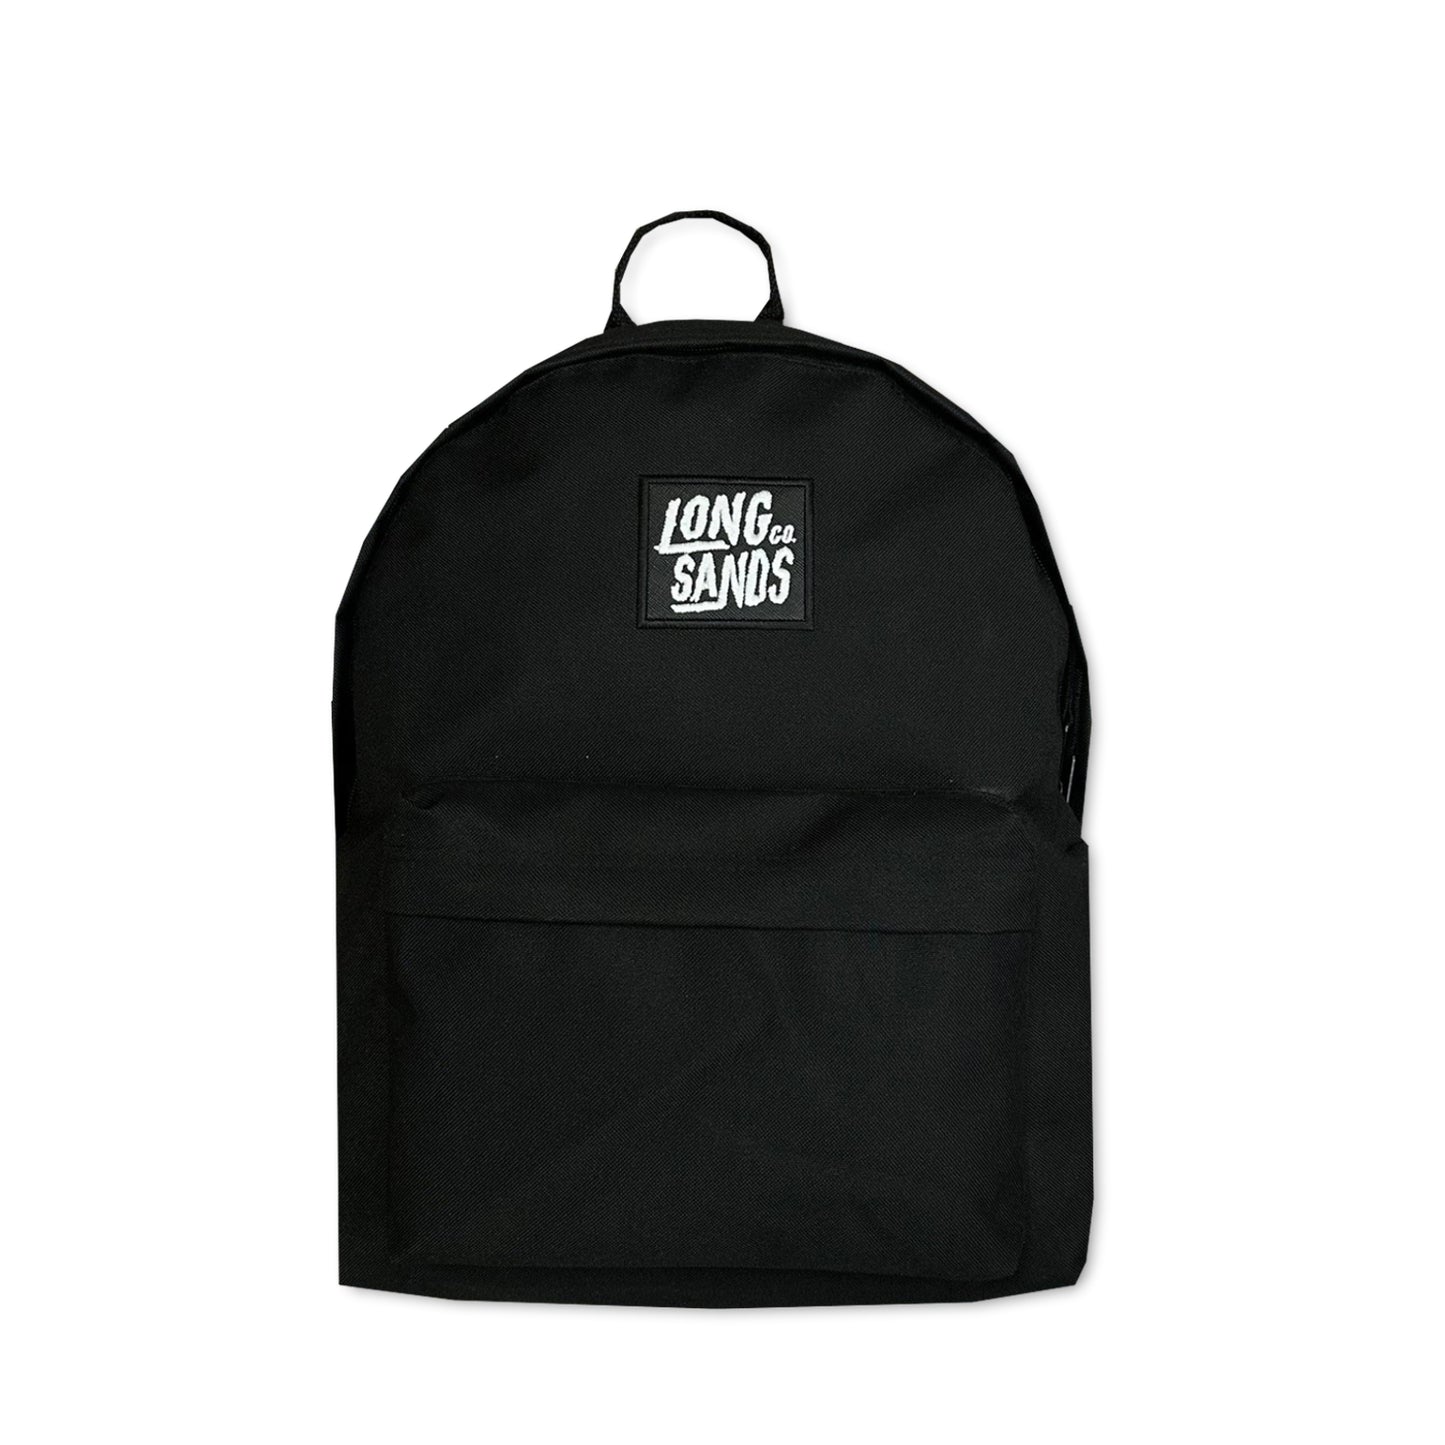 Company Backpack - Black/White